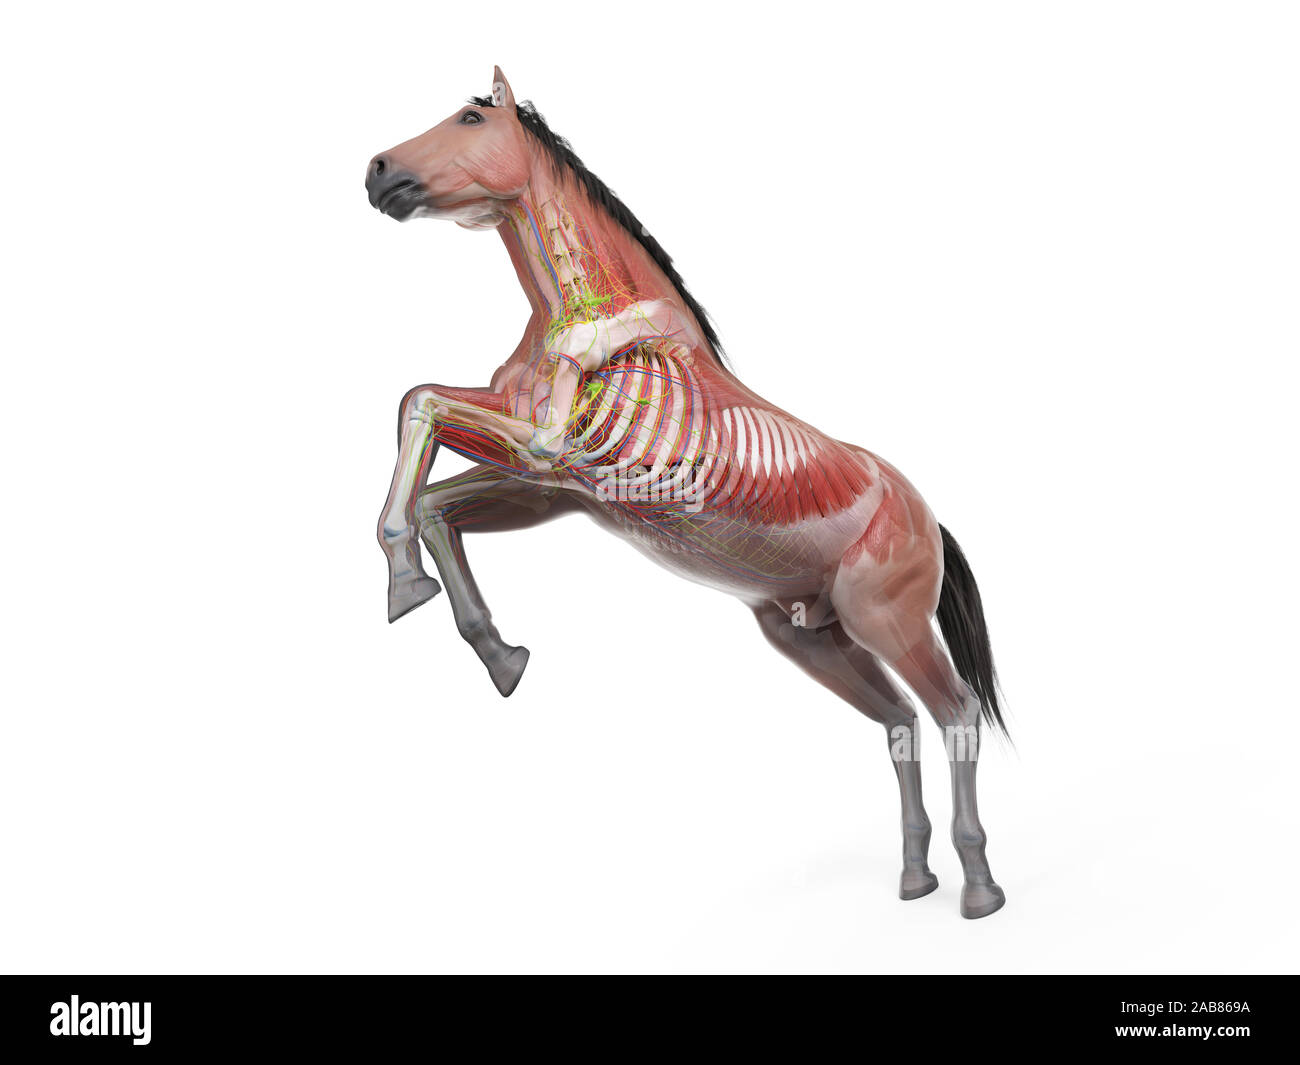 Rendu 3D précis médicalement illustration de l'anatomie équine - le système musculaire Banque D'Images